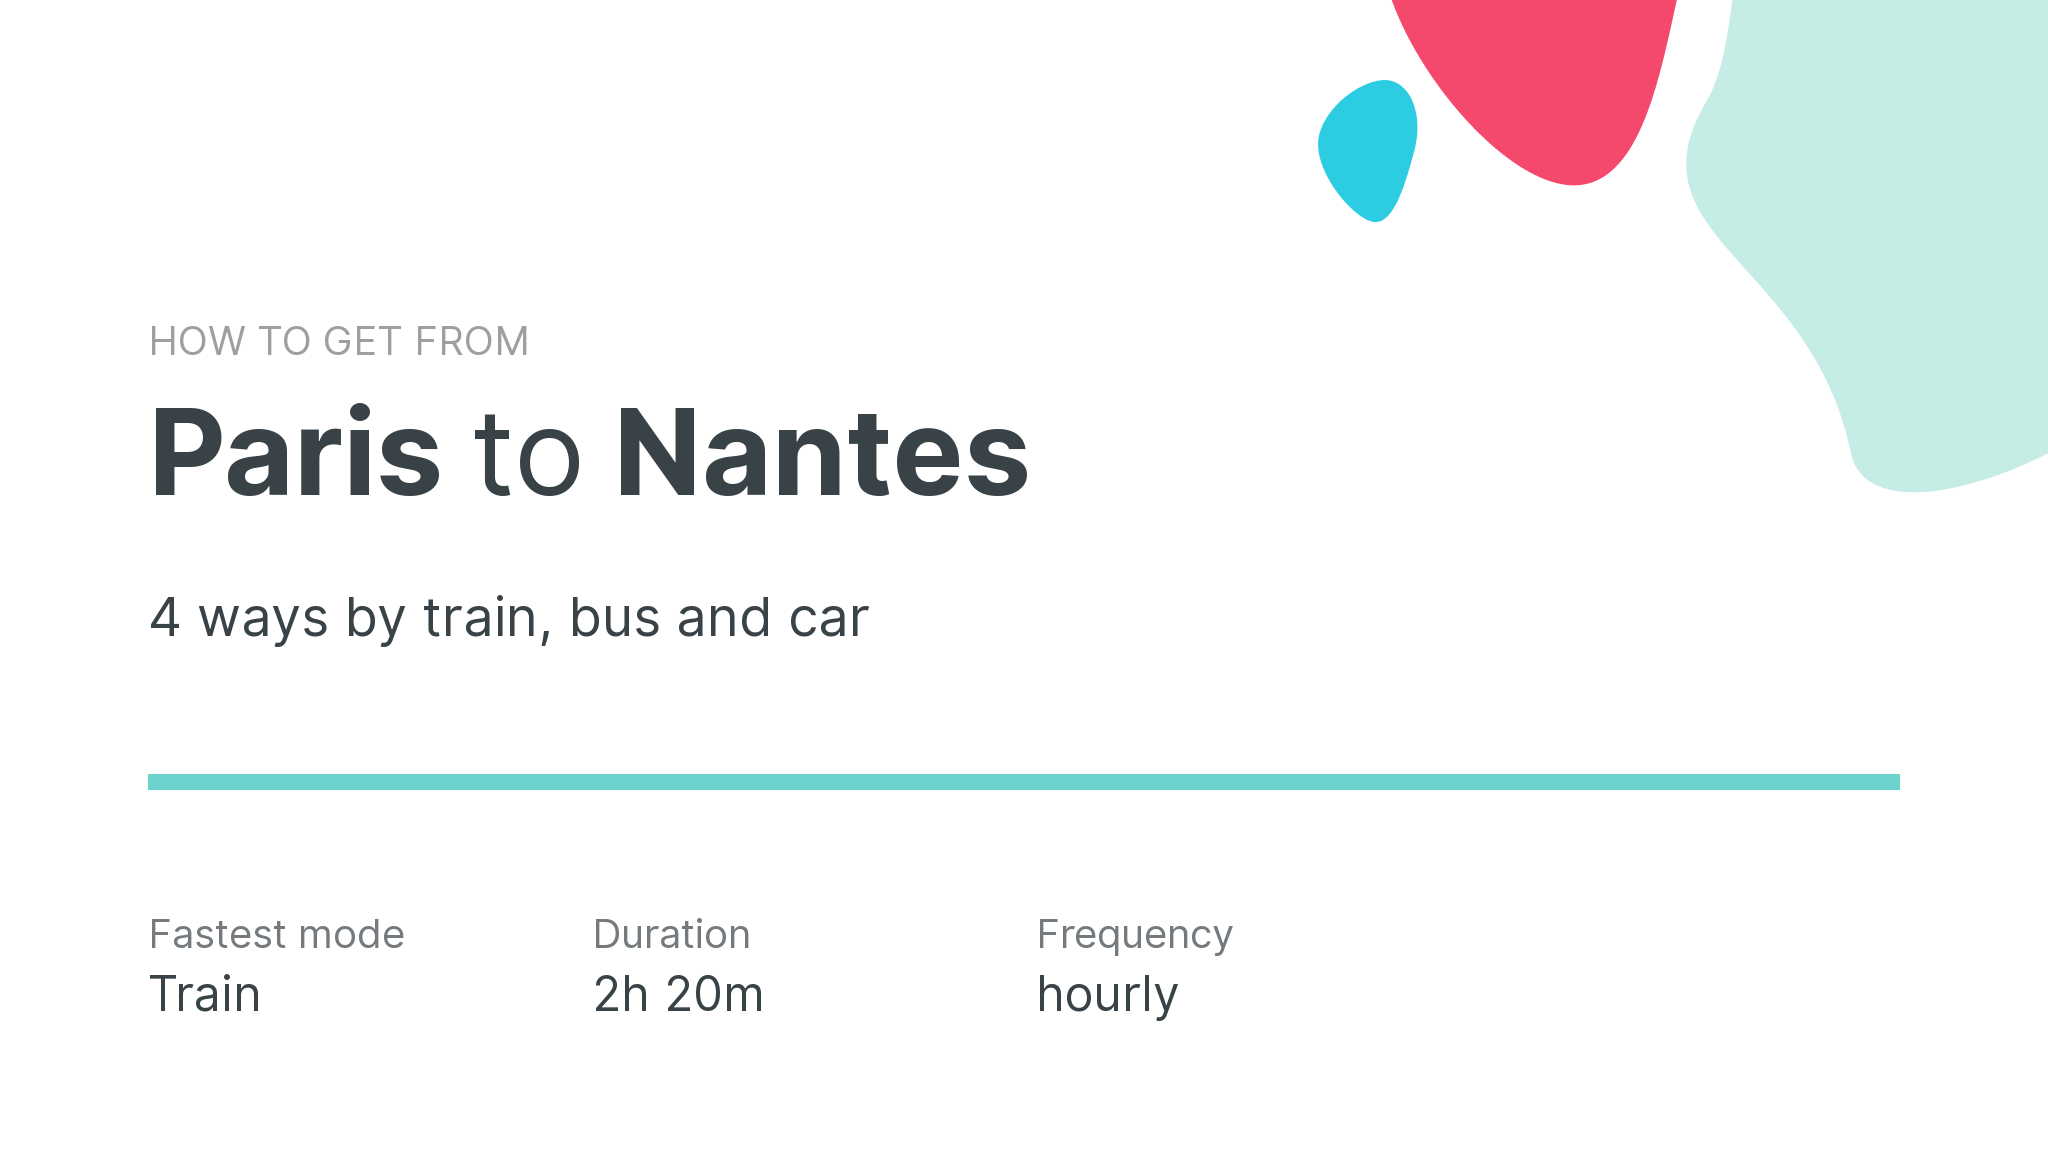 How do I get from Paris to Nantes